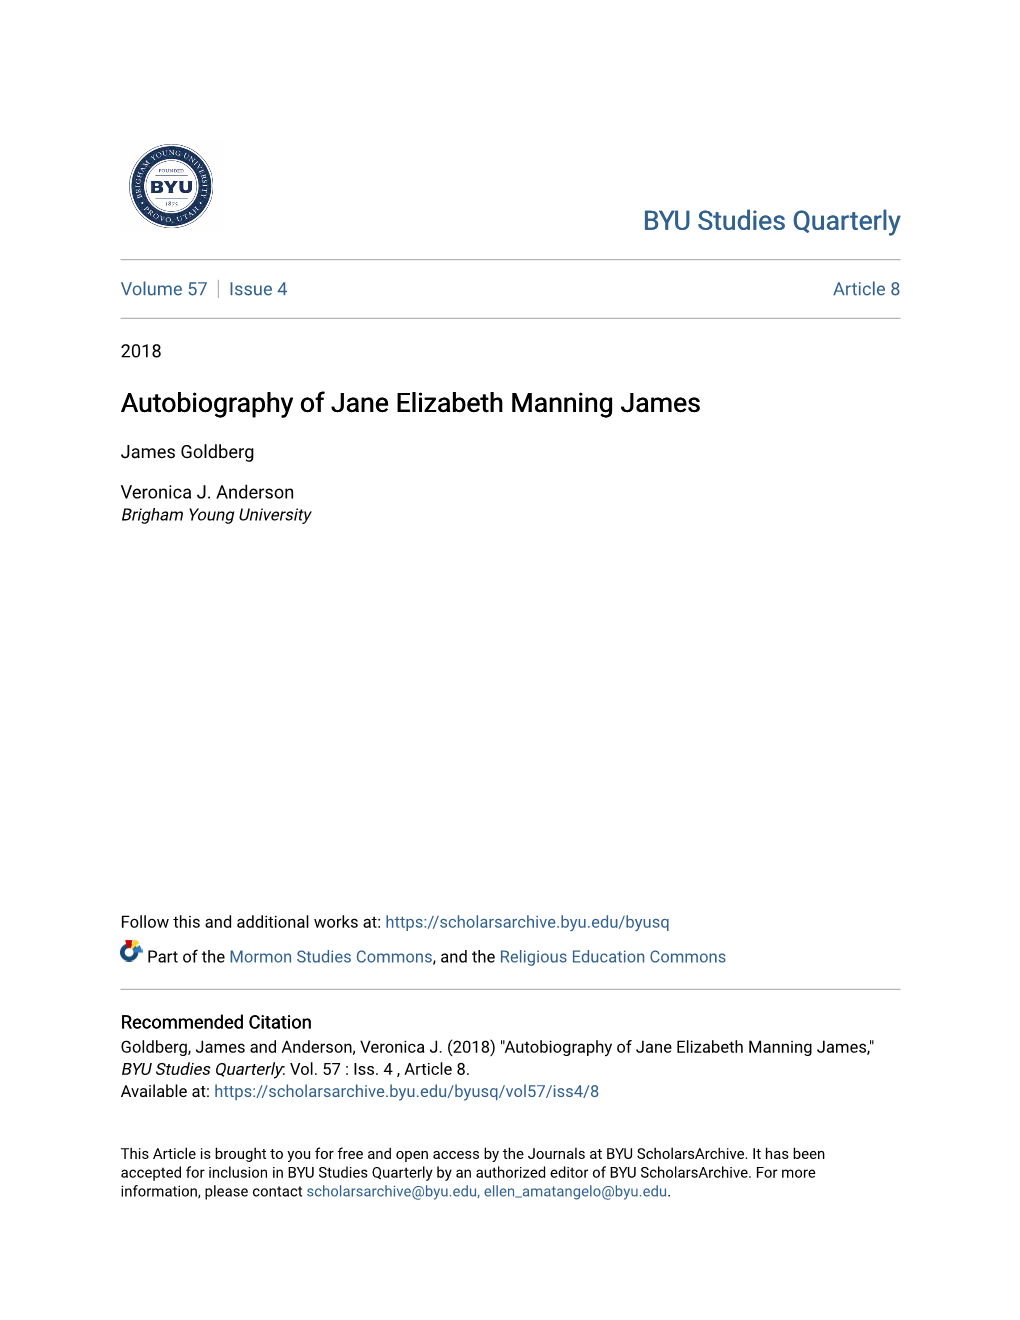 Autobiography of Jane Elizabeth Manning James